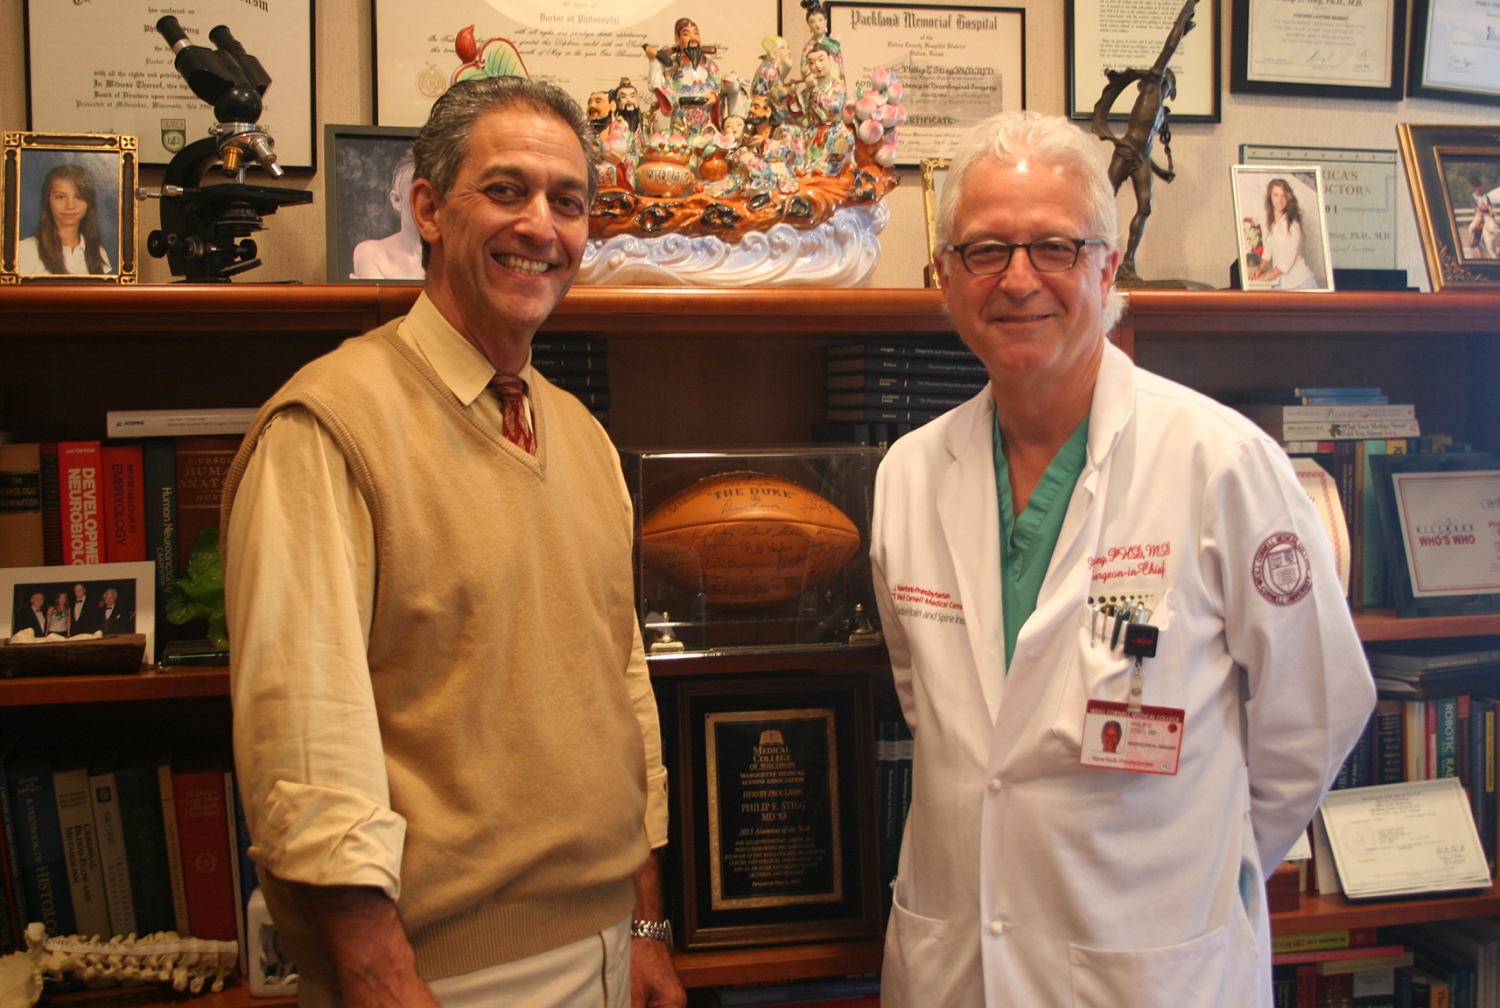 Drs. Barry E. Kosofsky and Philip E. Stieg